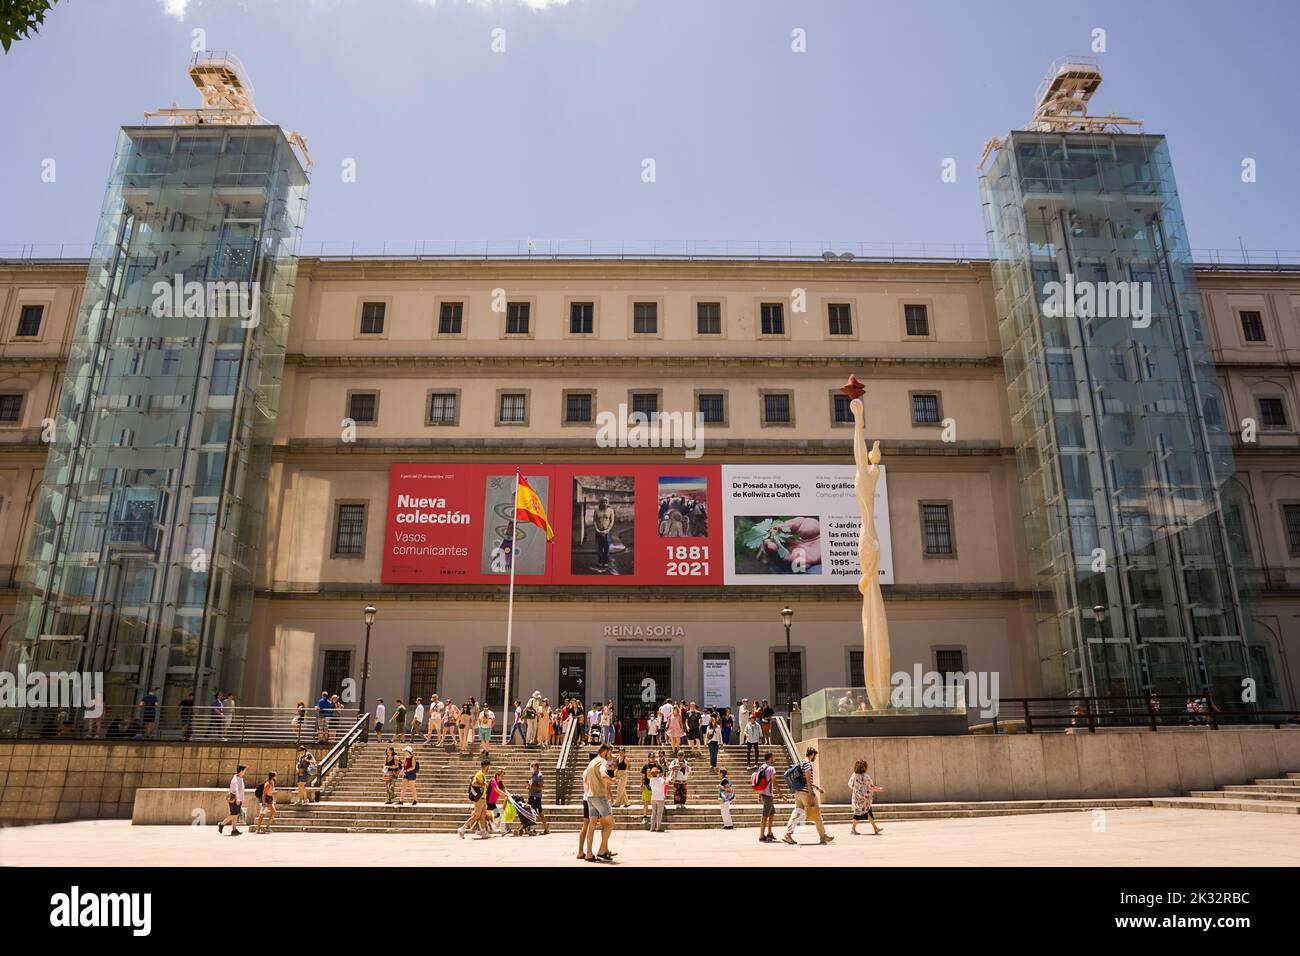 Madrid, España - 19 de junio de 2022: Fachada y entrada al Museo Nacional Reina Sofía de Madrid Foto de stock